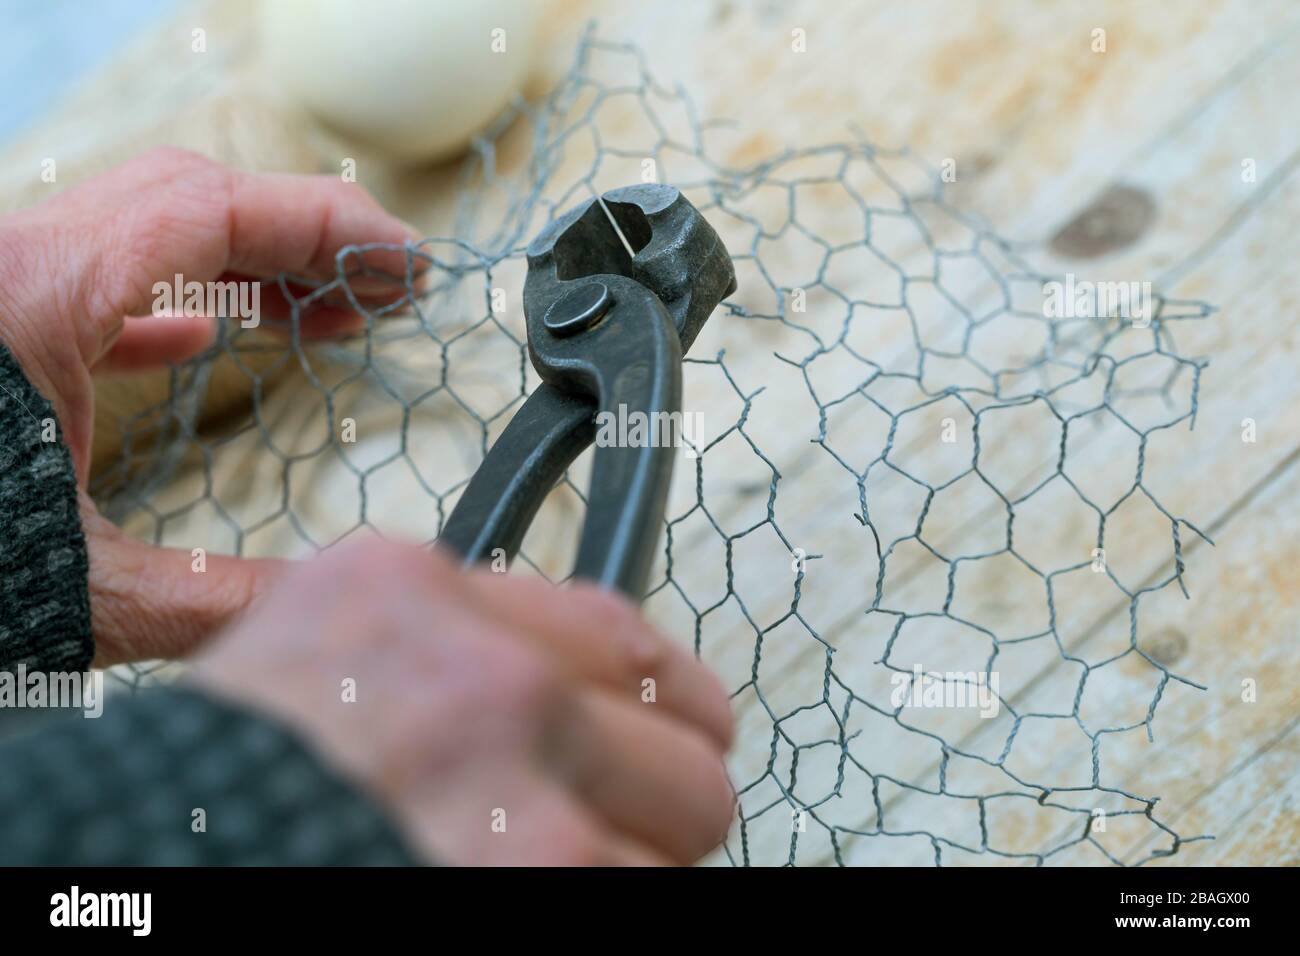 Fabrication d'un support pour boules de graisse, série photo 3/6, Allemagne Banque D'Images